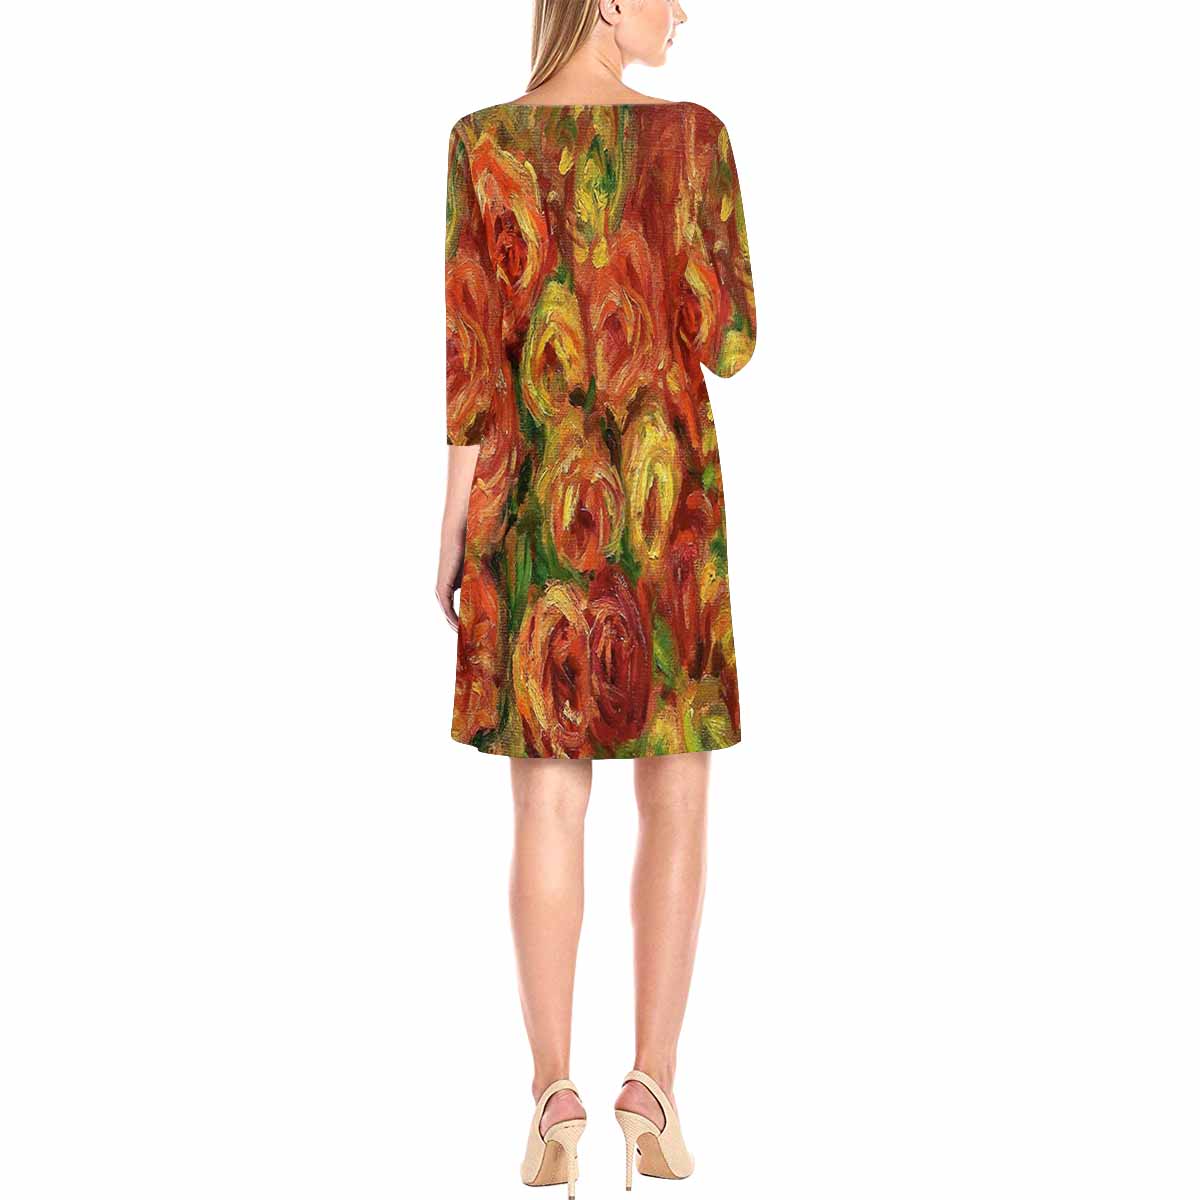 Vintage floral loose dress, model D29532 Design 18